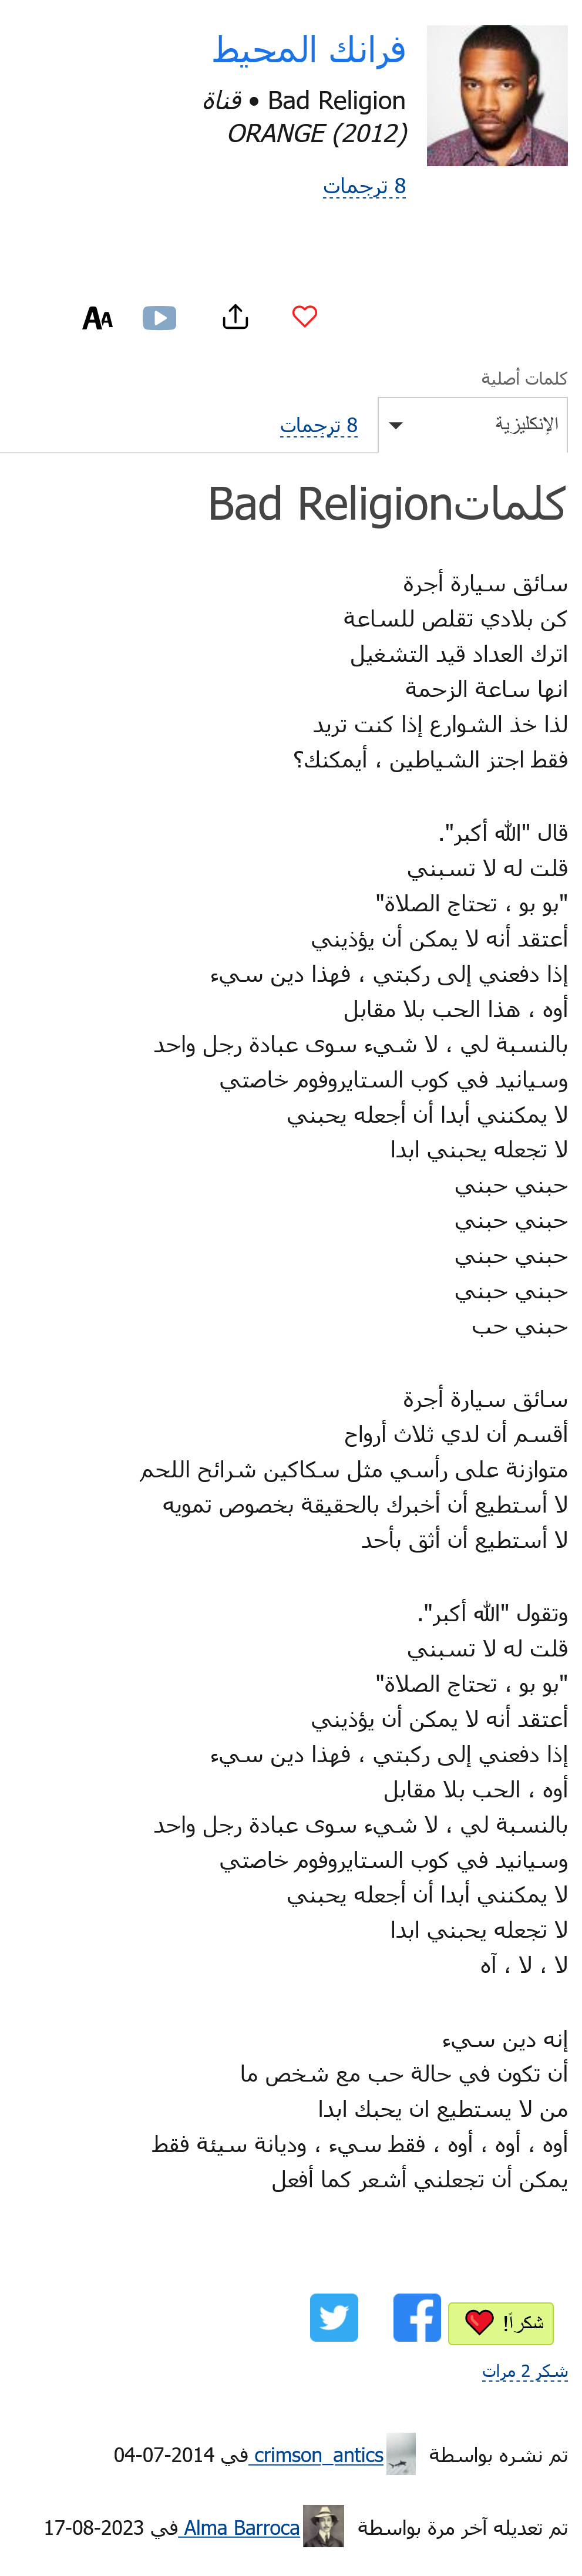 كلمات أغنية "bad religion" مترجمة للعربية - وفق lyricstranslate